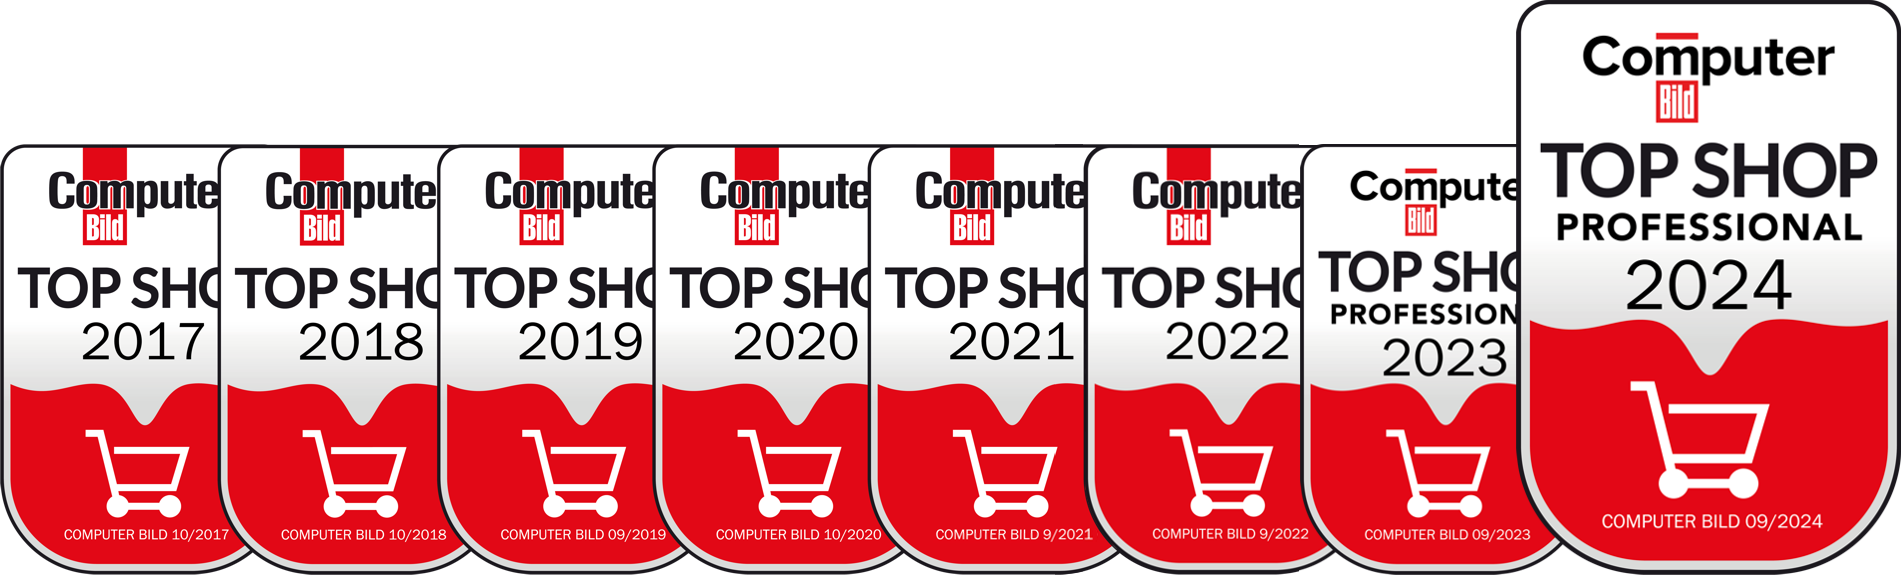 ComputerBild Top Shops 2020